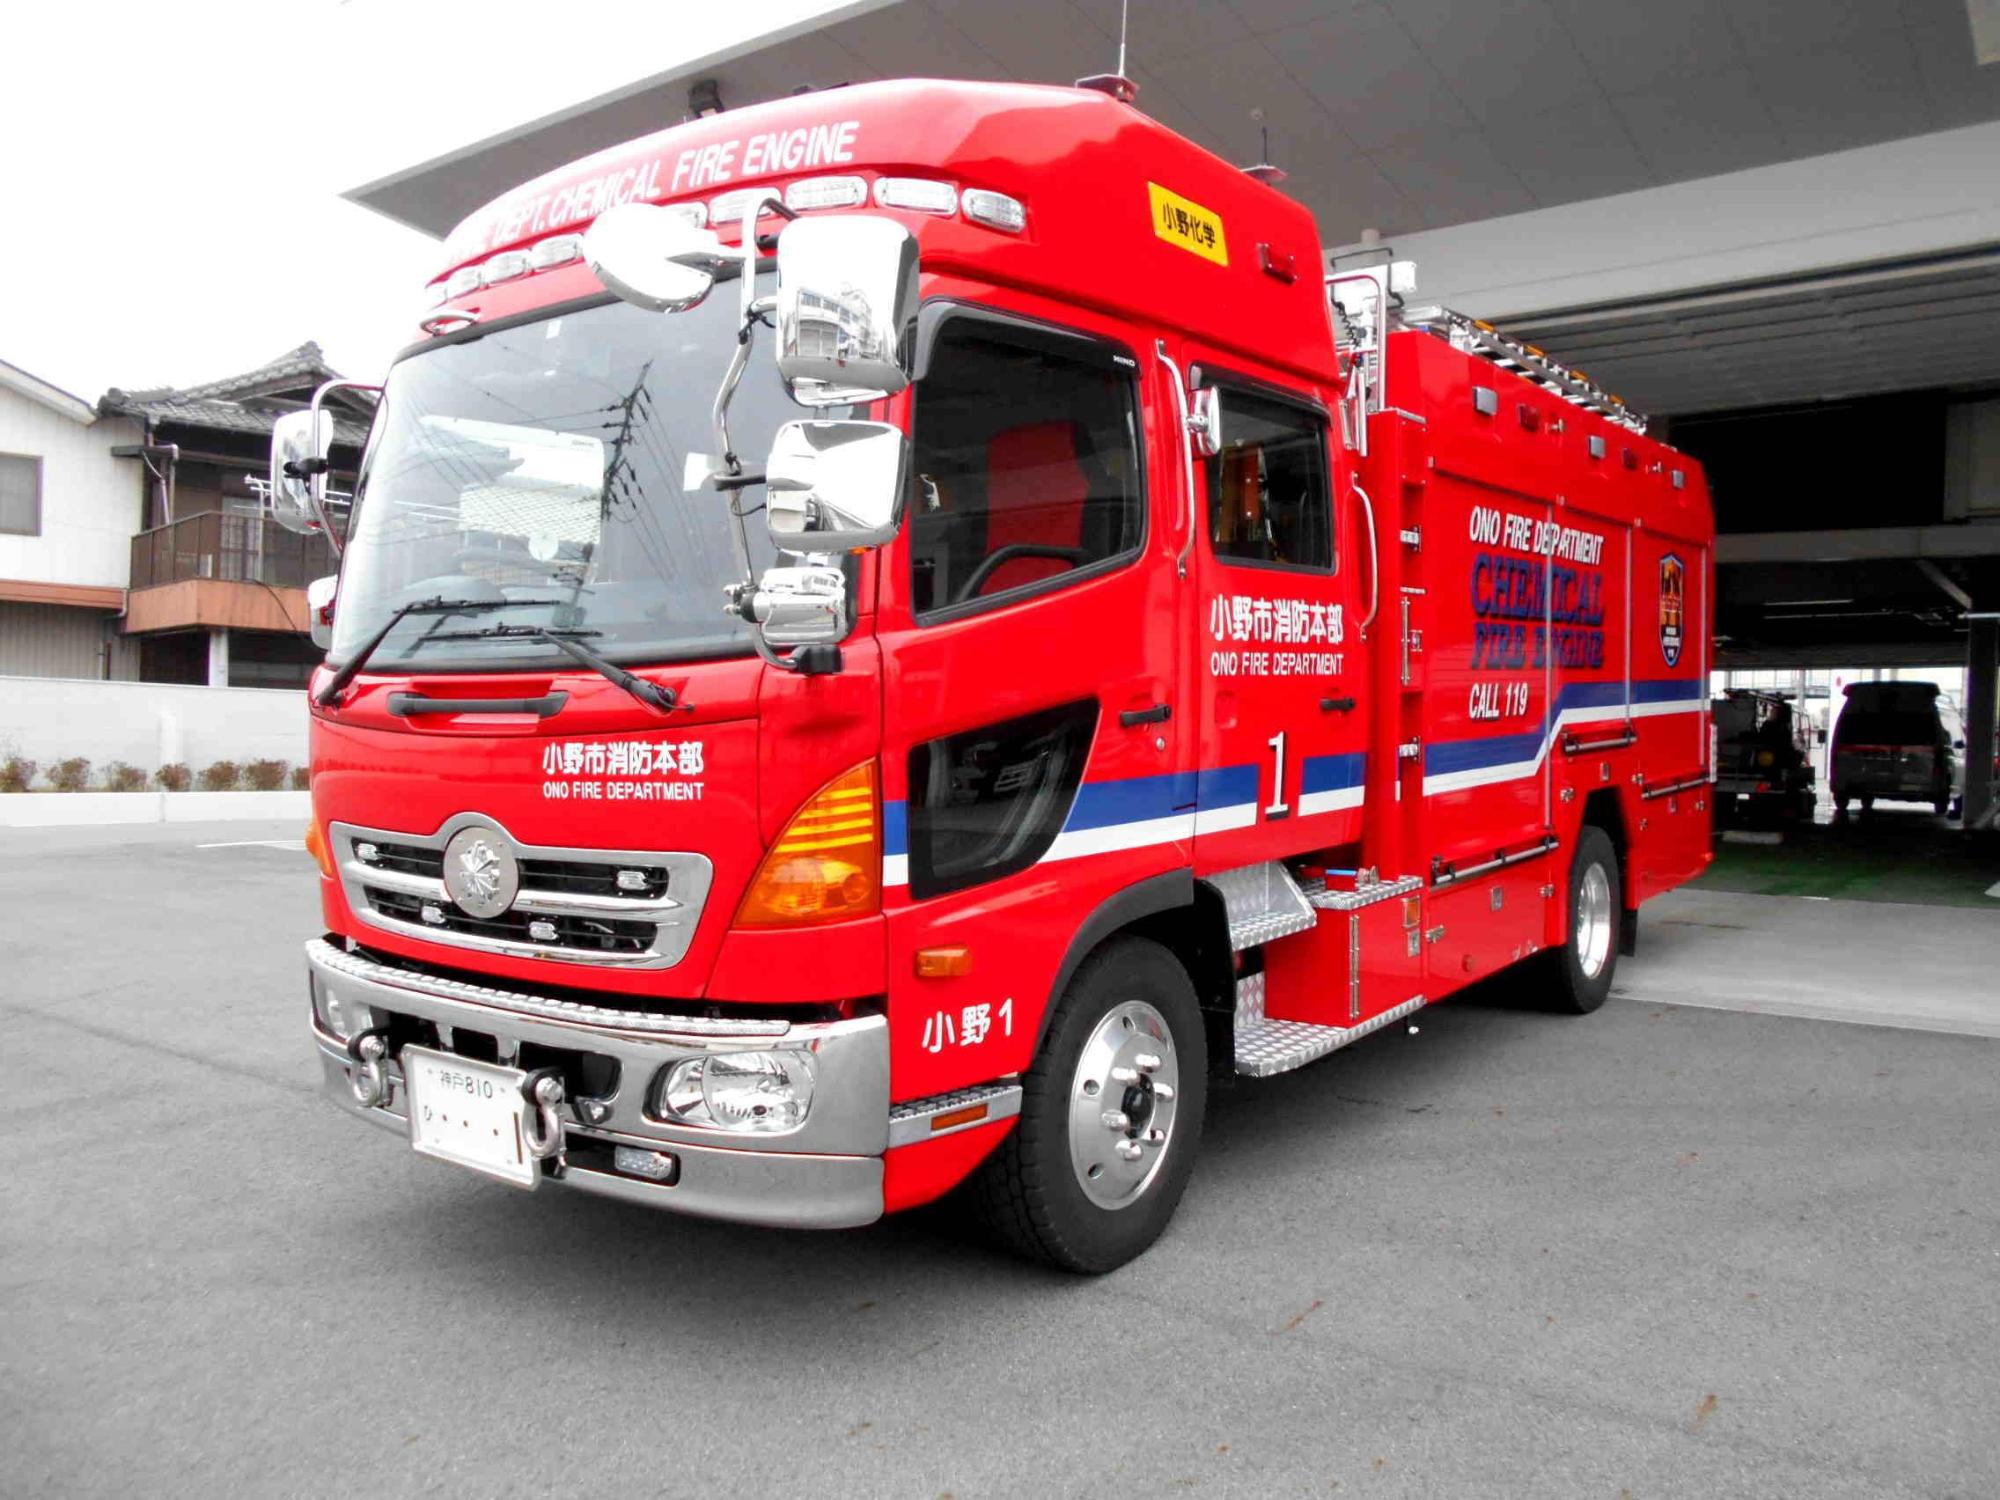 平成29年に本部に導入された大型消防用化学車の車の先頭部分の写真